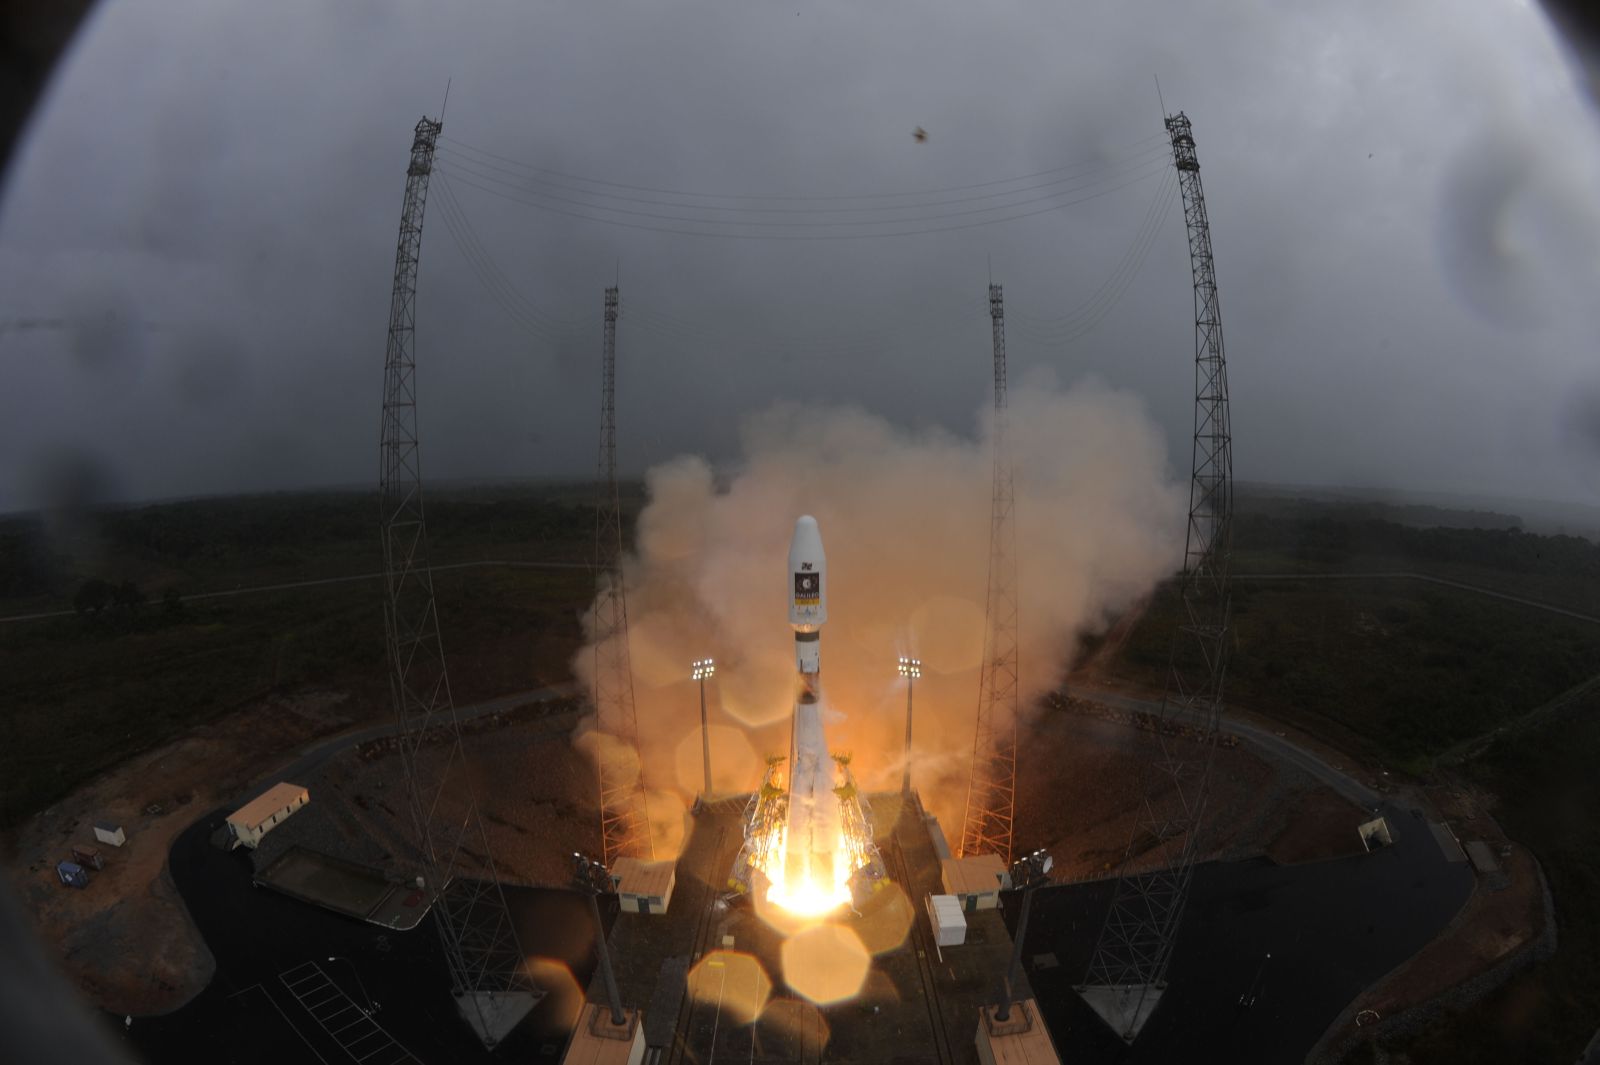 Azz orosz hordozórakéta elemelkedik a francia-európai űrrepülőtérről<br>(fotó: ESA)